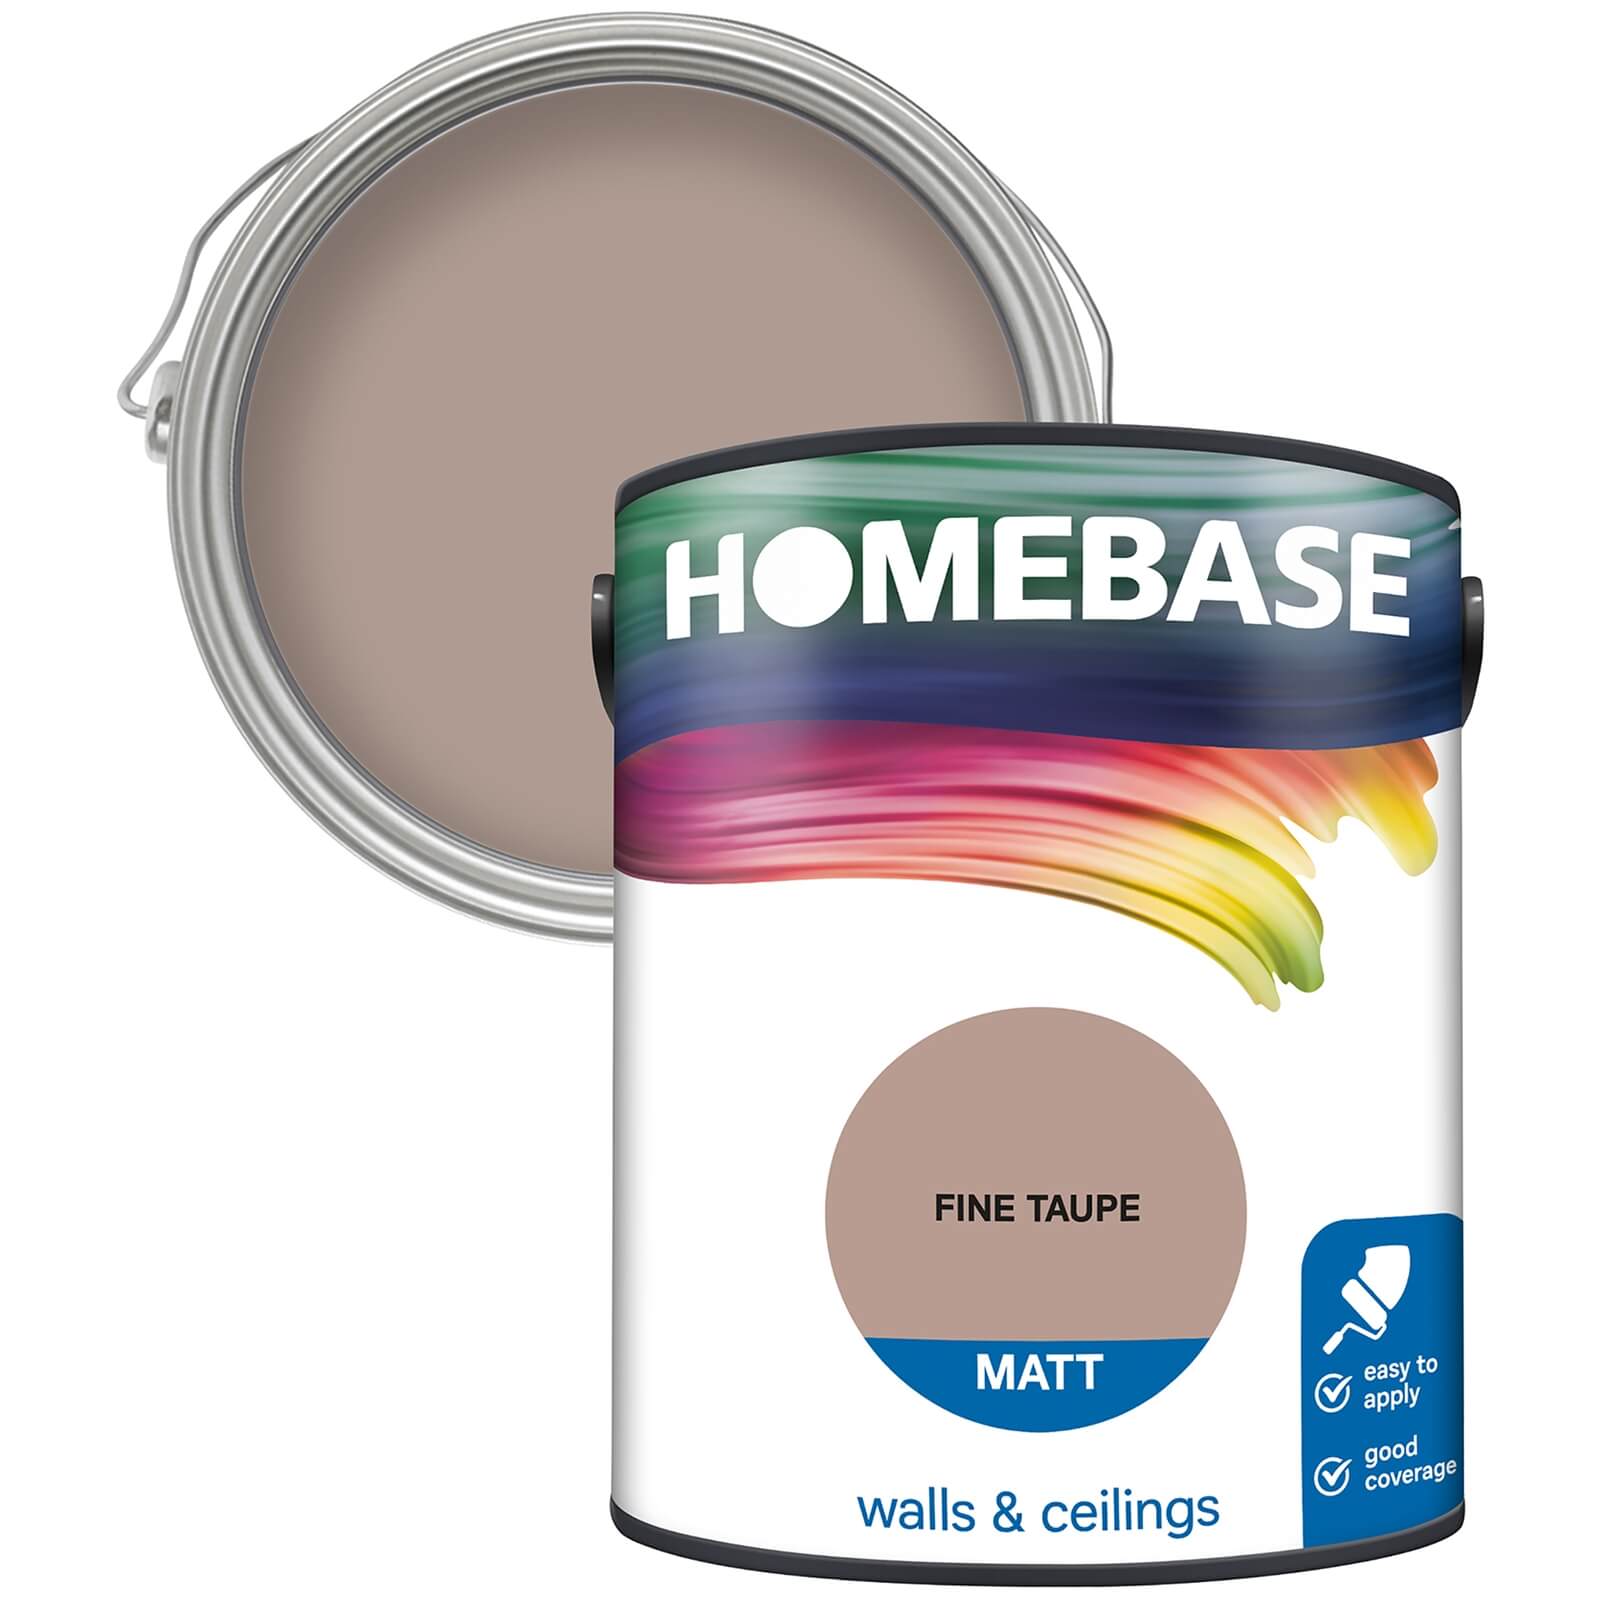 Homebase Matt Emulsion Paint Fine Taupe - 5L